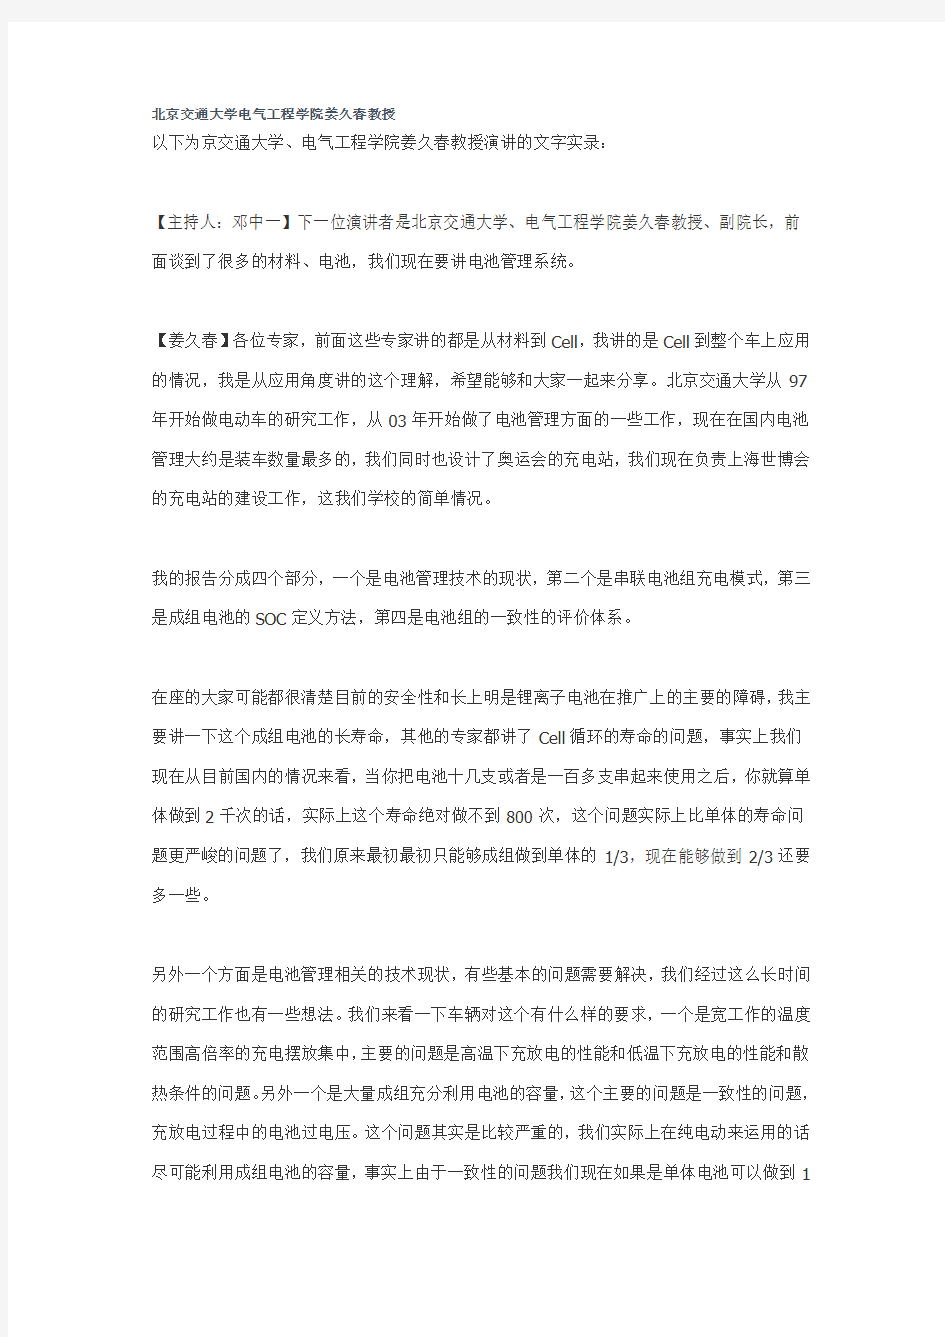 北京交通大学电气工程学院姜久春教授